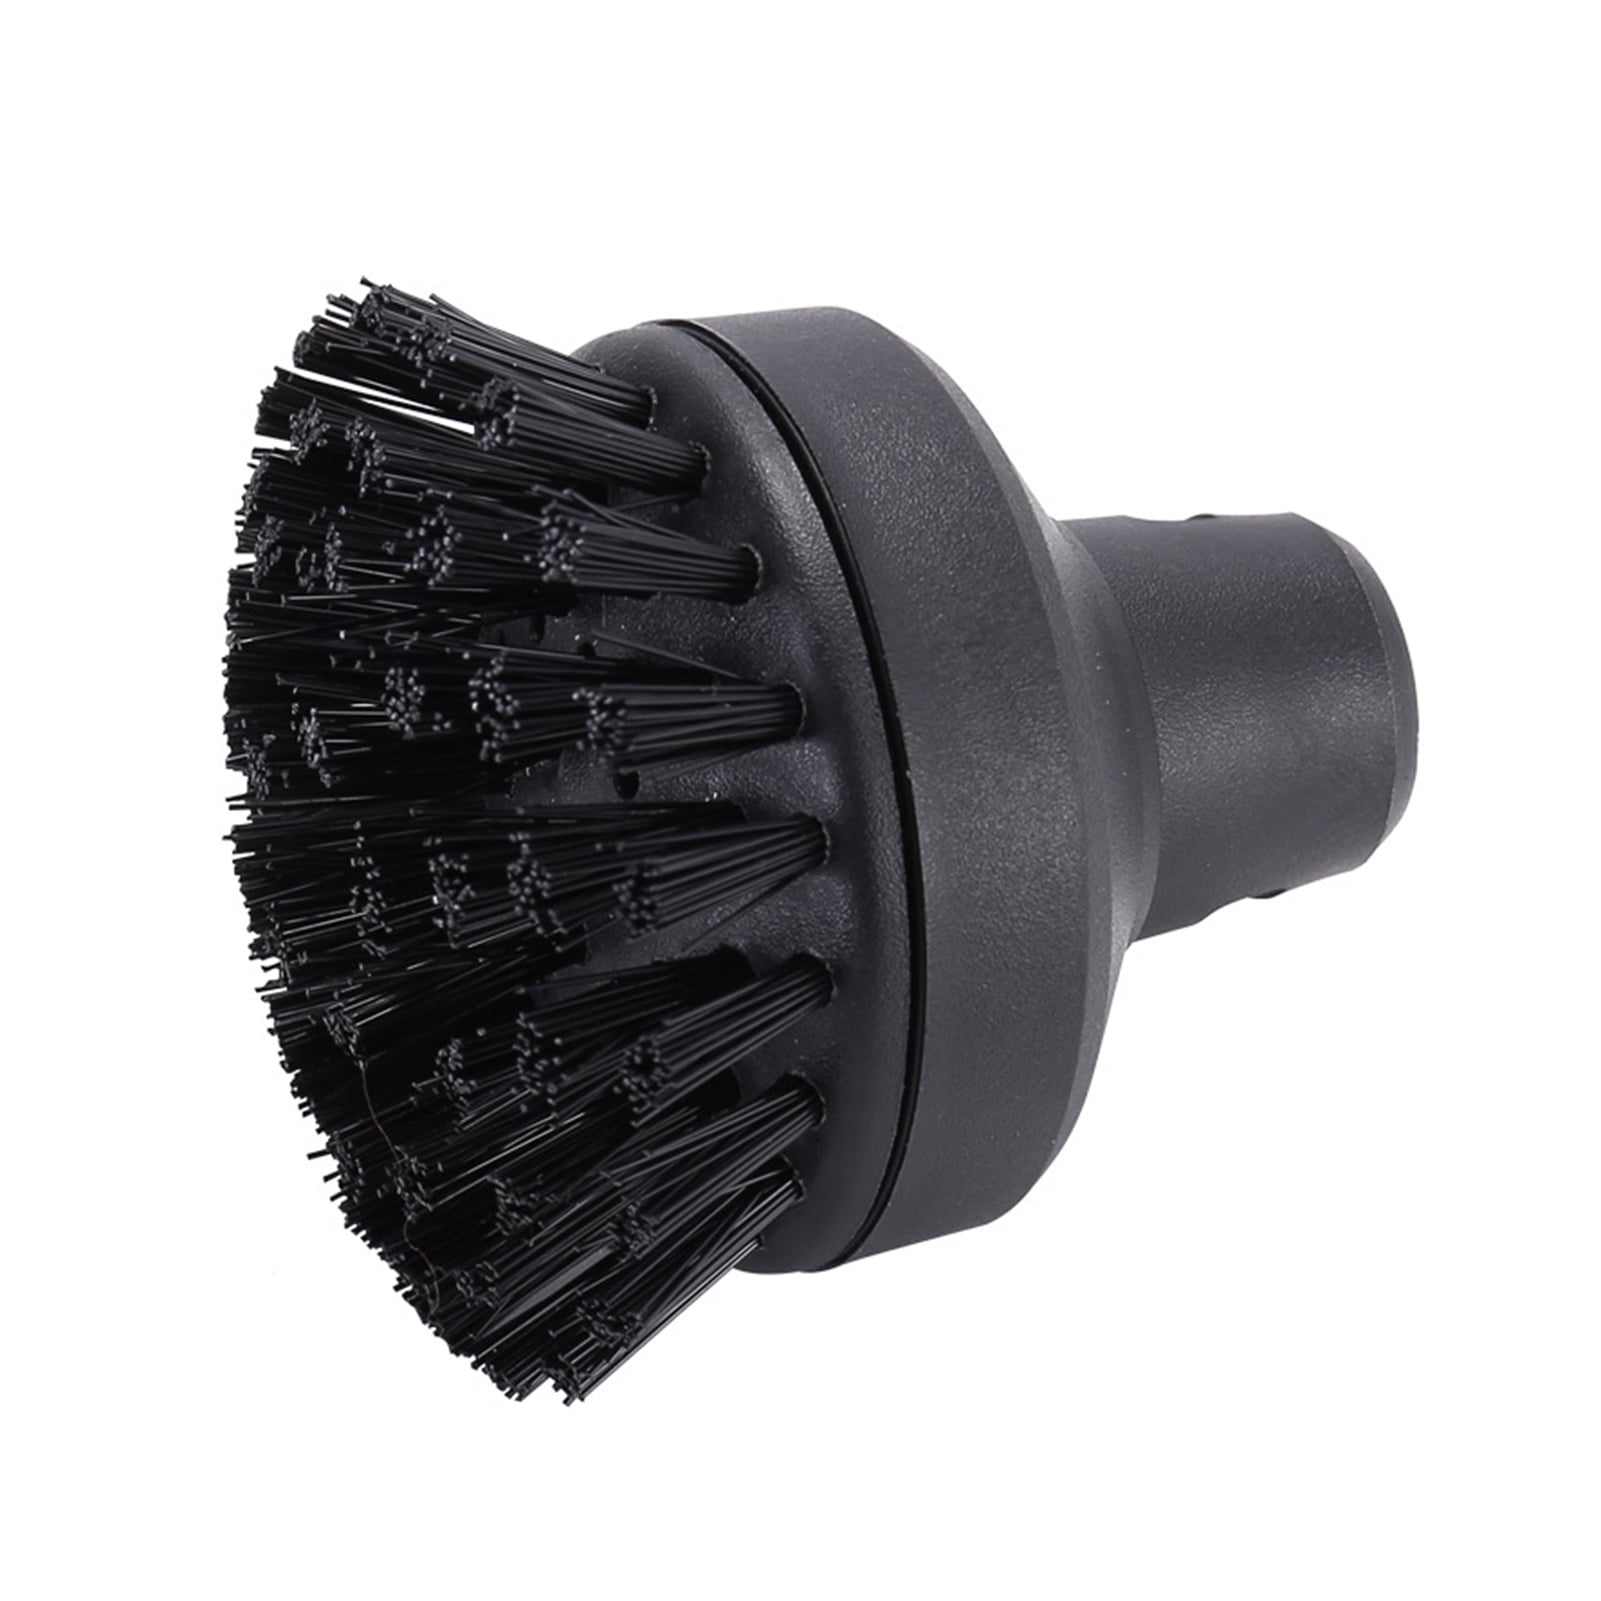 SC3 For Karcher SC1 Large Brush Cleaning Brush For Steam Cleaner SC4 SC2 